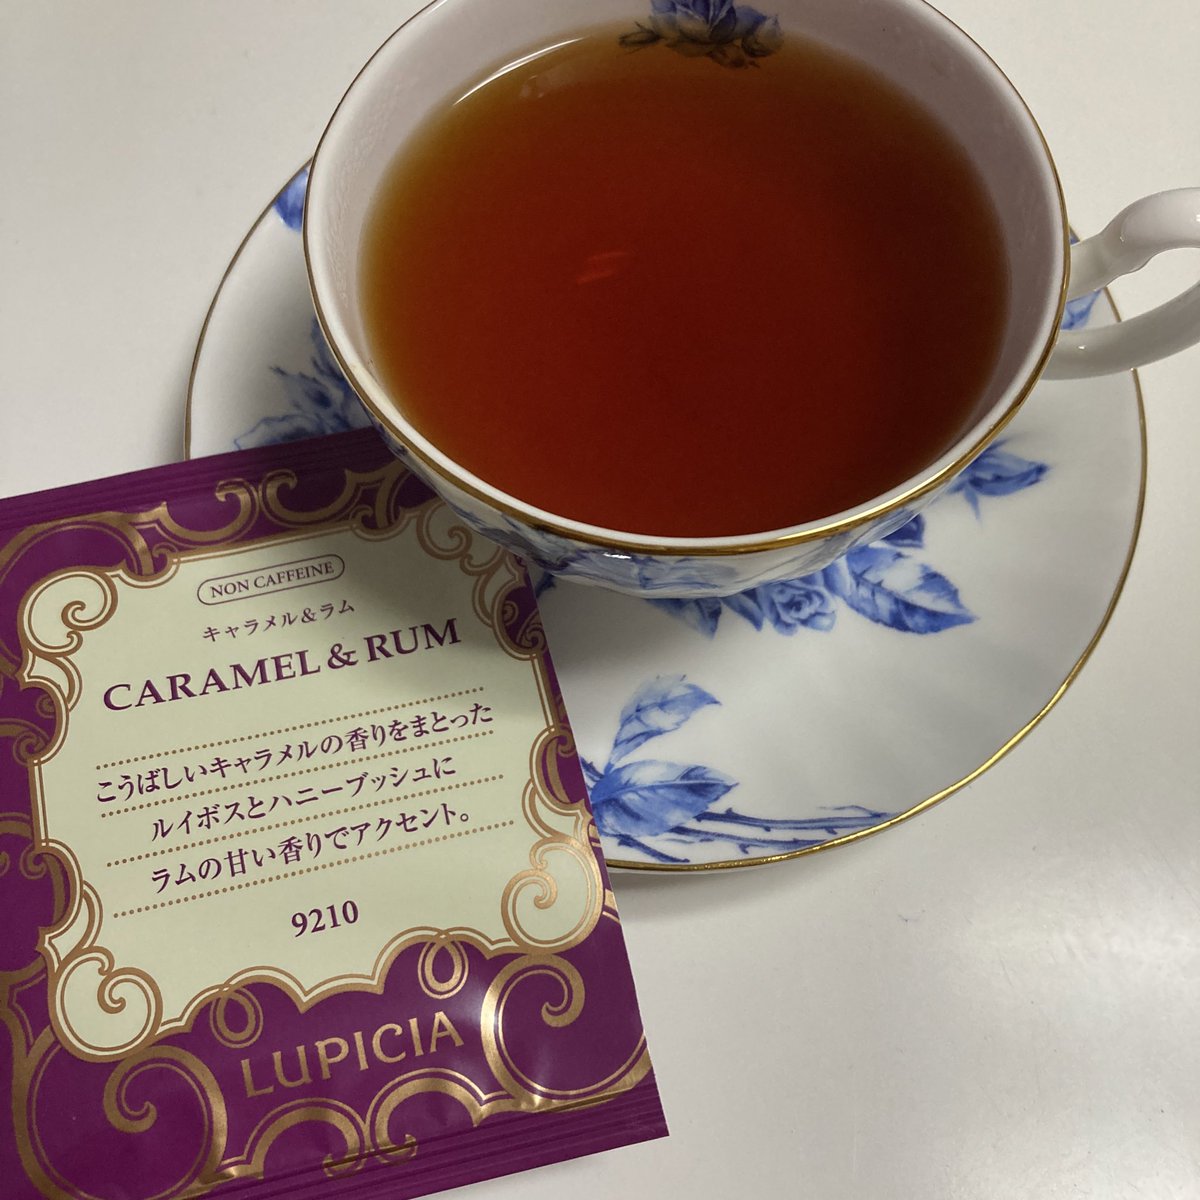 久しぶりの #朝のティータイム 。と言いつつお茶をしたのは昨夜。甘い香りと優しい味が良いお茶でした。寝る前でしたのでノンカフェインのルイボスティーです。ティーセットは私のお気に入りのエインズレイ(@aynsley_japan)の #エリザベスローズ のブルーです